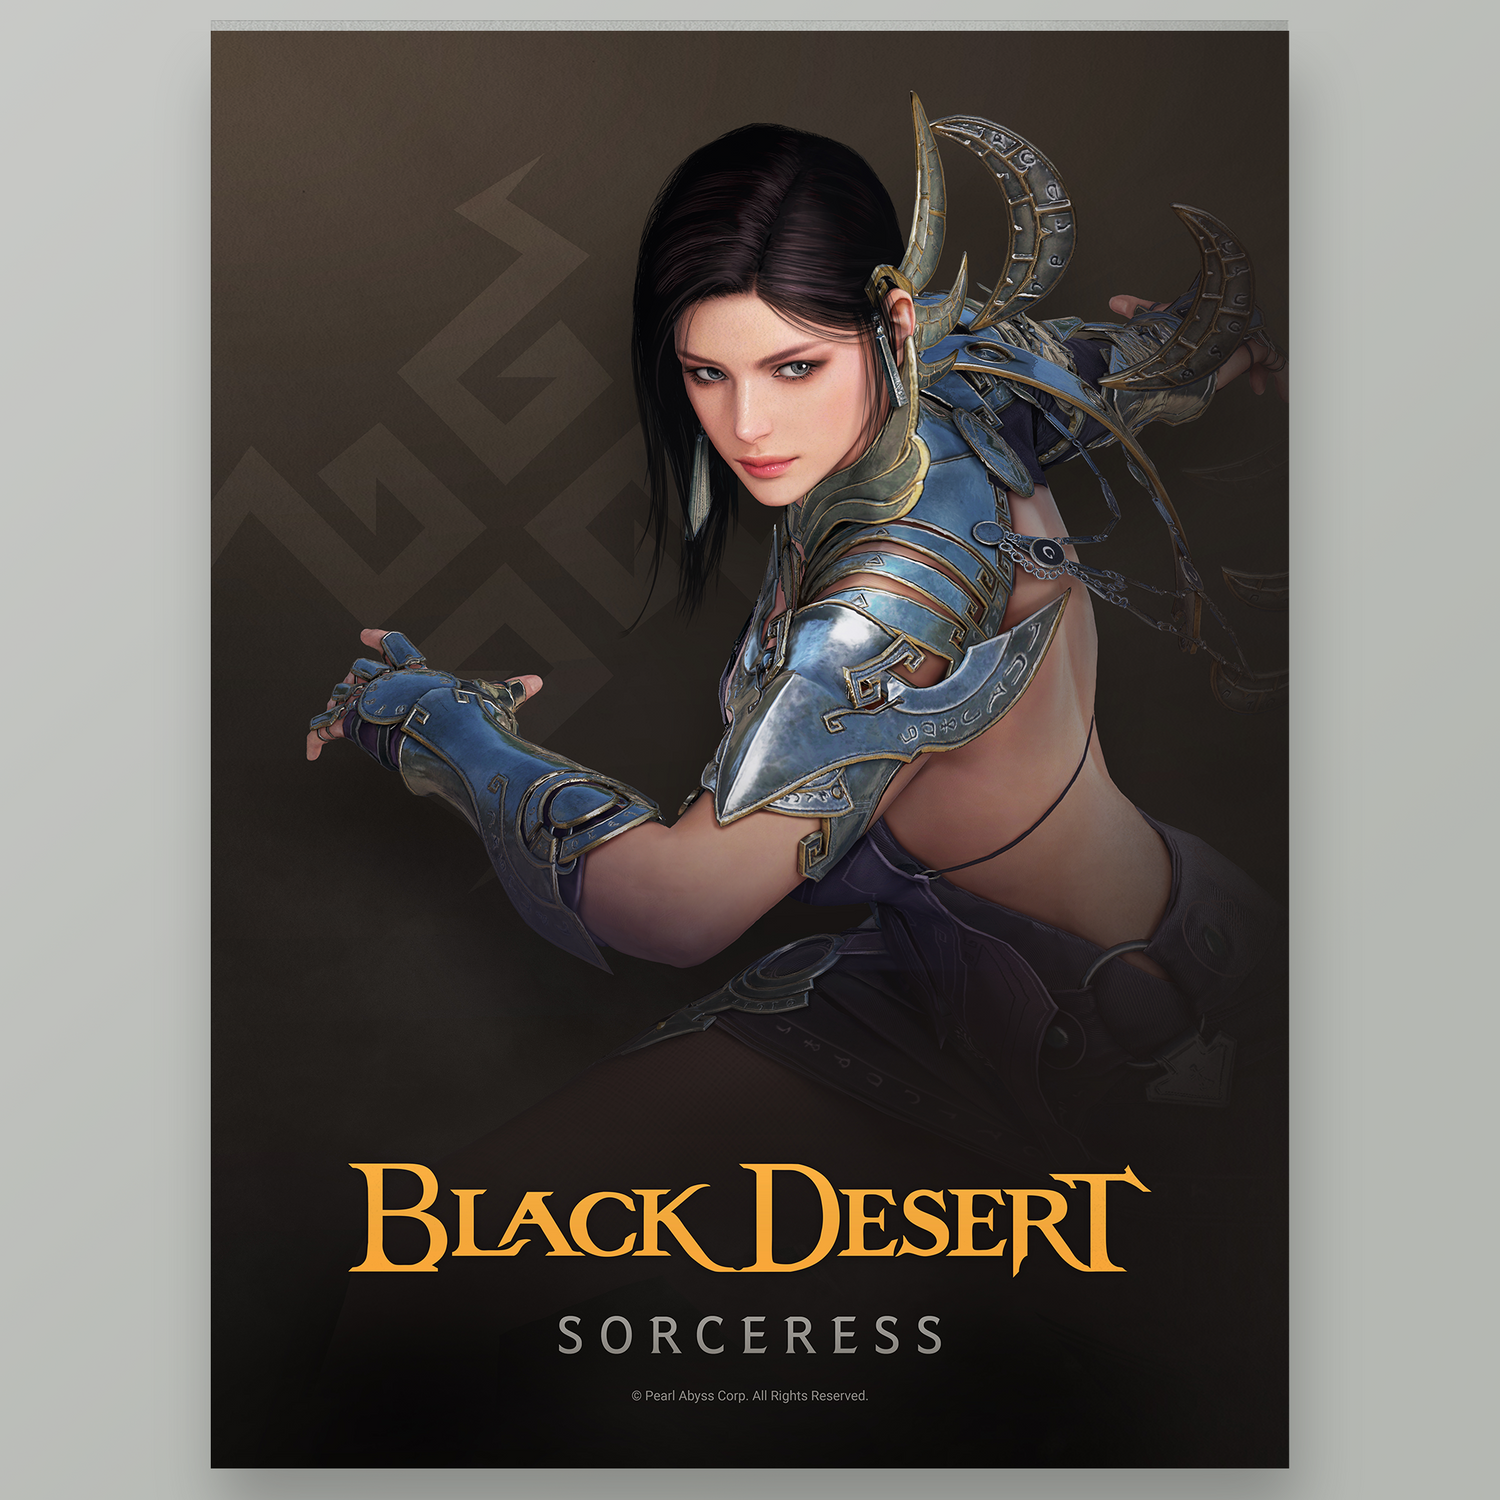 Black Desert Sorceress Poster